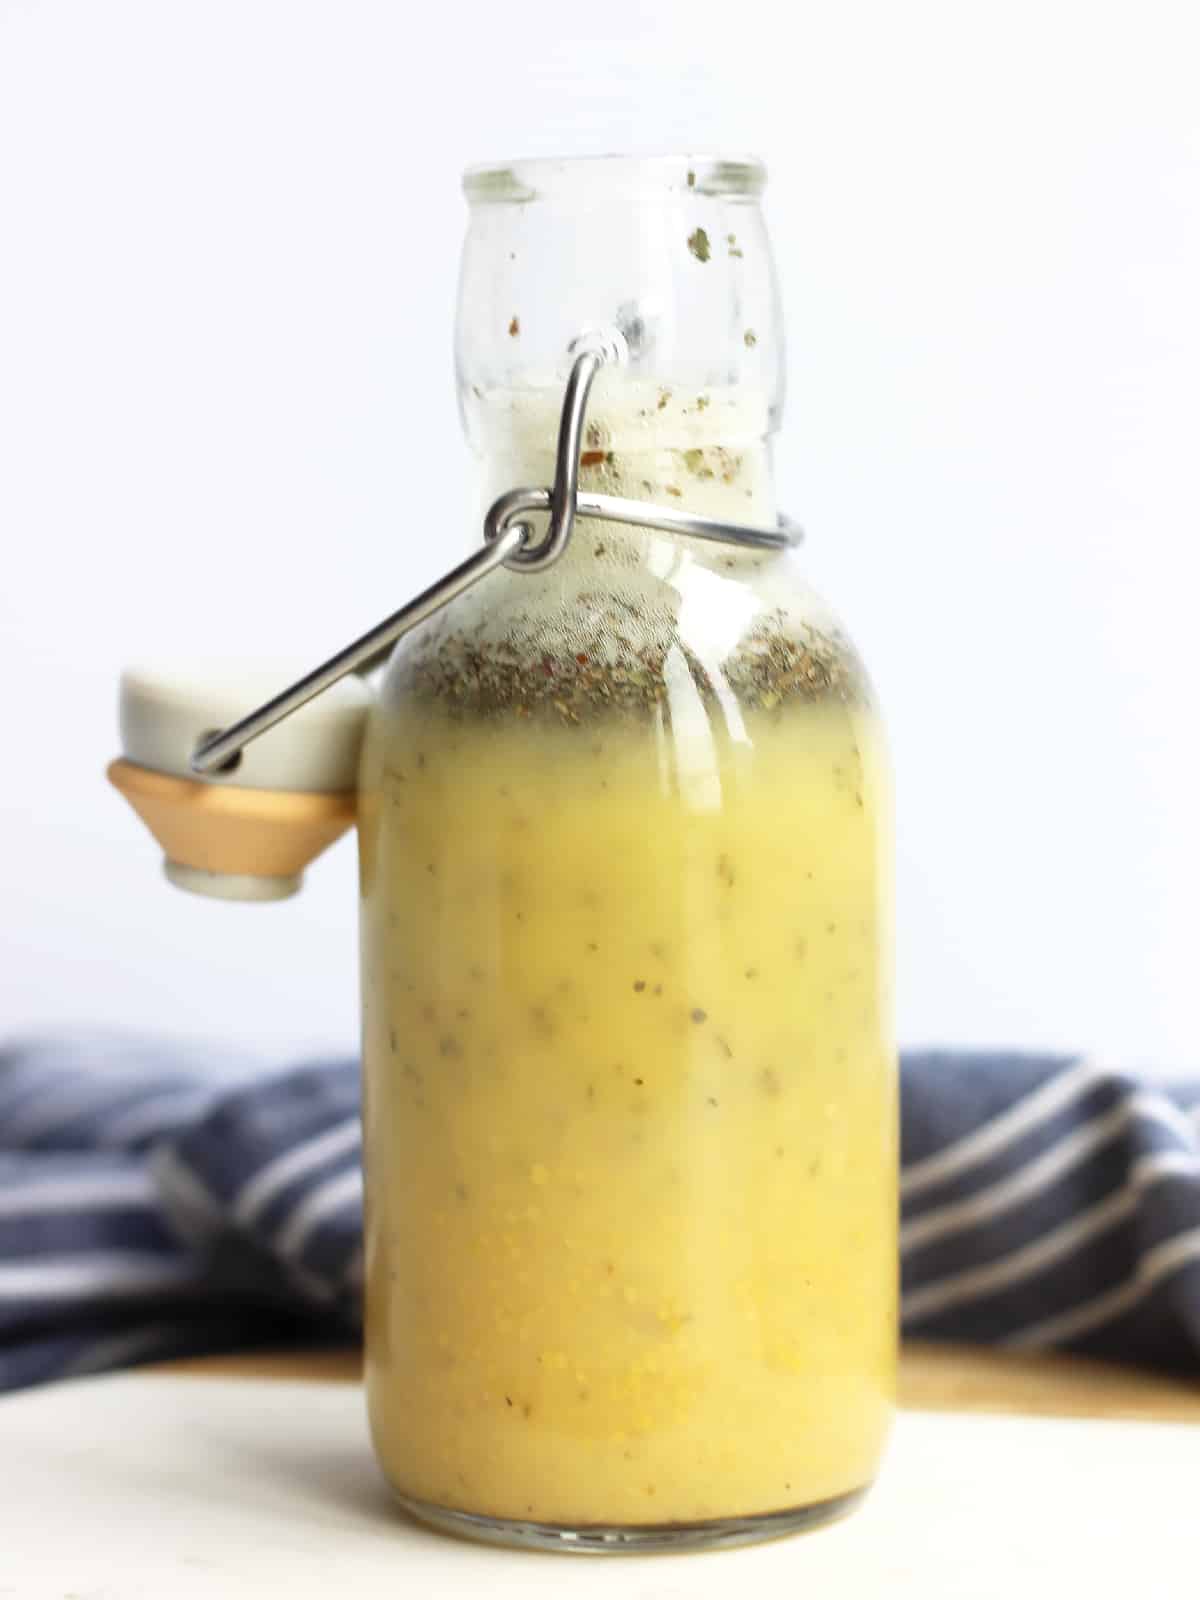 Apple Cider Vinegar and Mustard Dressing